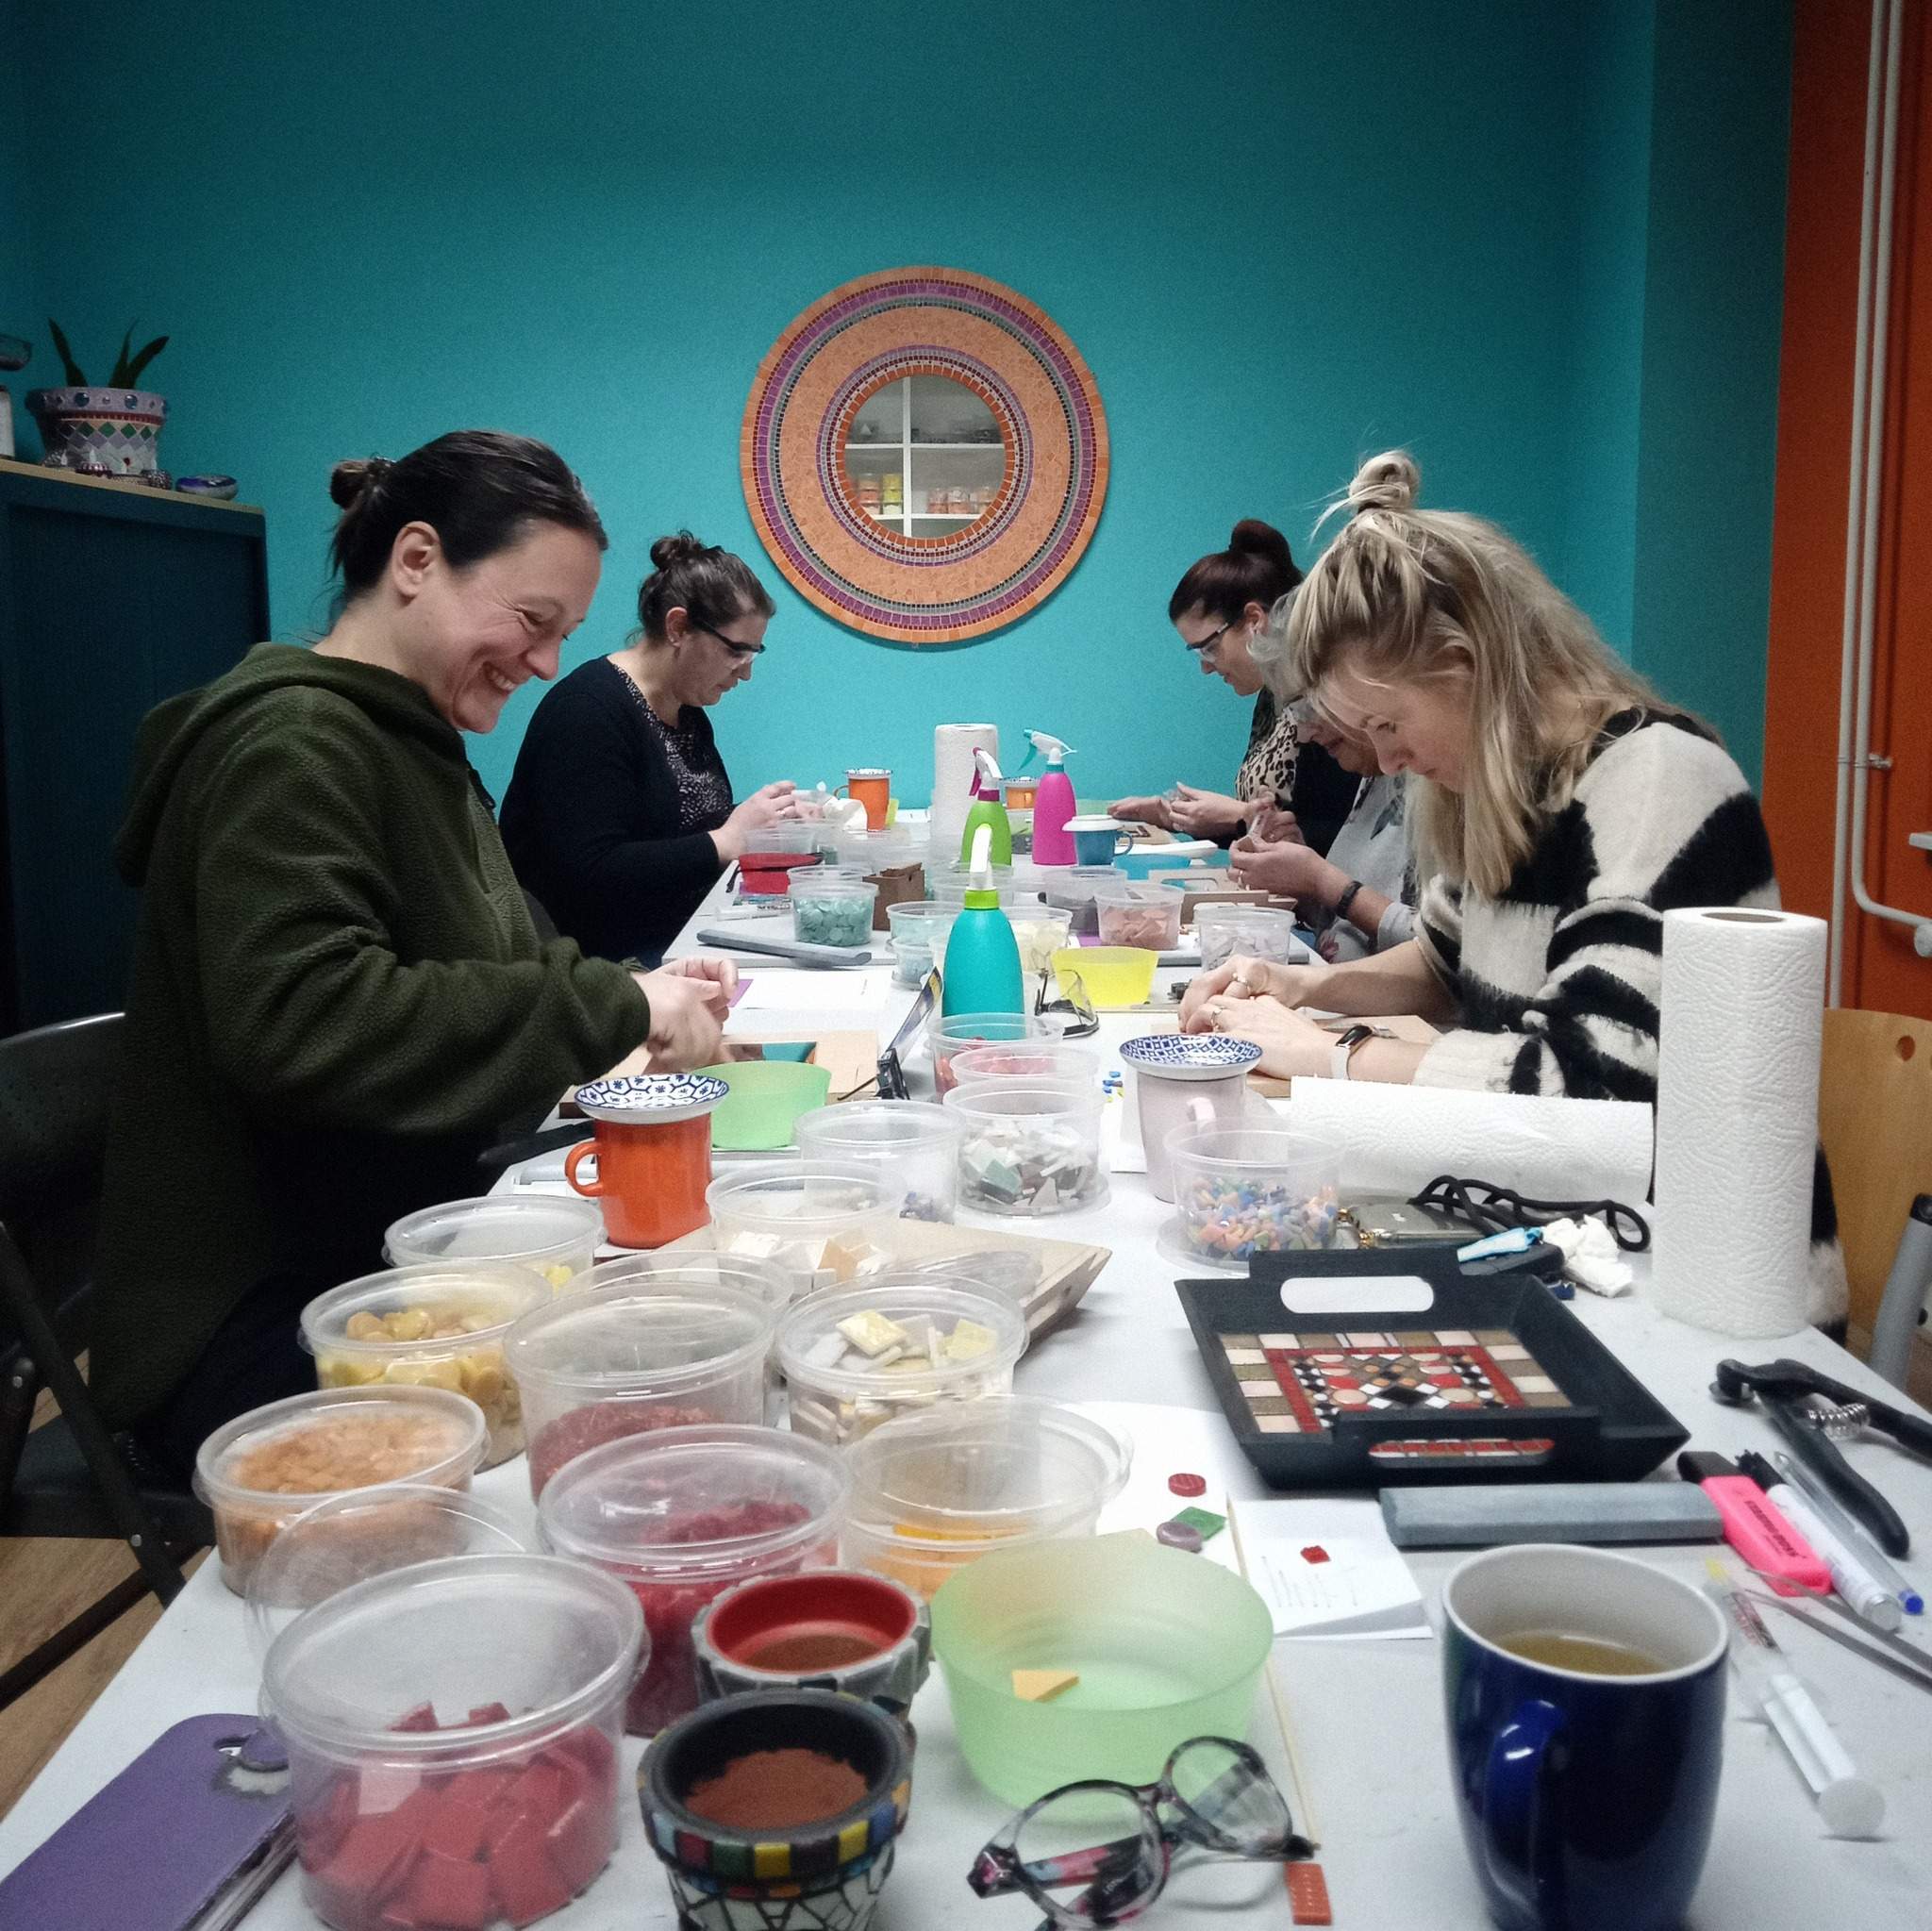 Vier enthousiaste cursisten doen mee met een mozaiekworkshop. De cursisten zitten aan een lange tafel gevuld met mozaiekmateriaal en voorbeelden. De workshopruimte is kleurrijk ingericht met een turquoise muur en een vrolijke mozaiekspiegel.